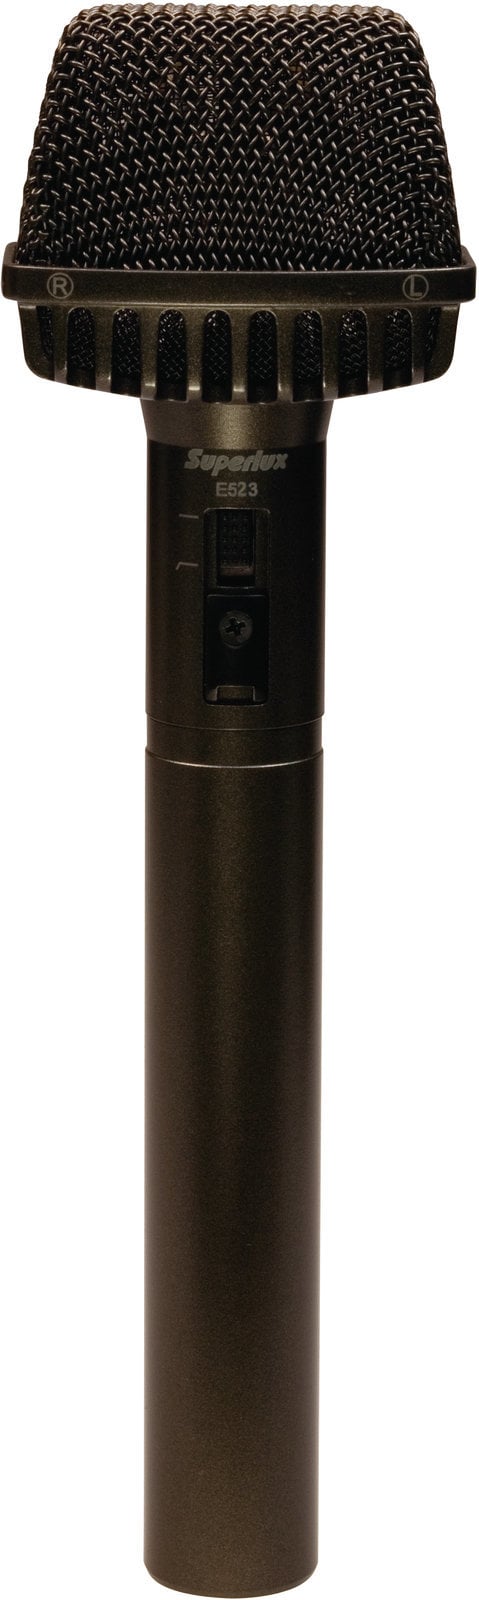 STEREO Микрофон Superlux E523D